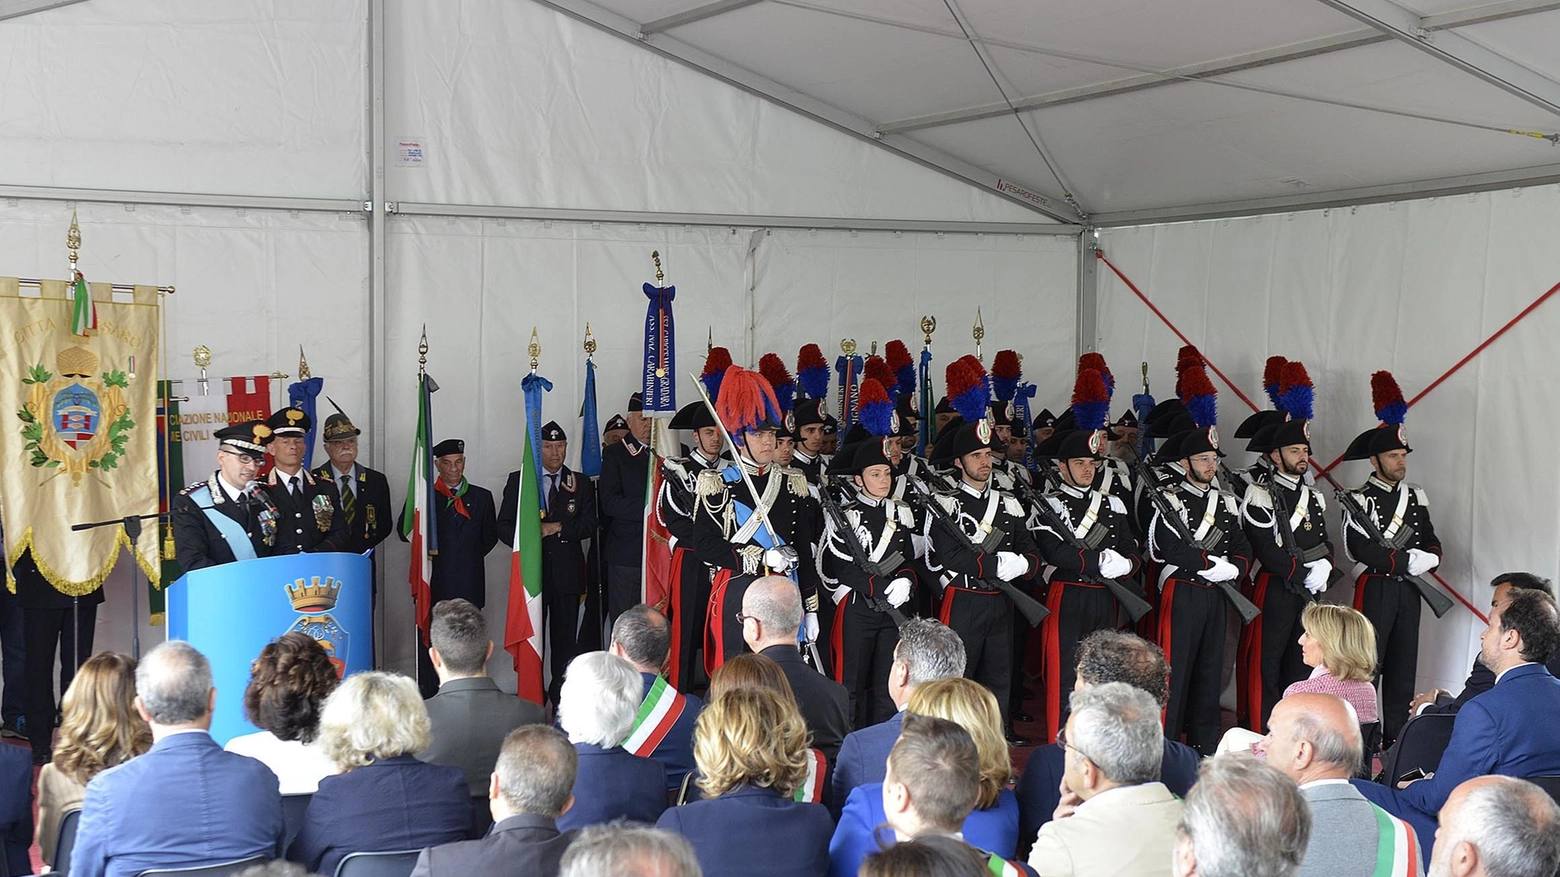 La festa dei carabinieri  Diluvio, militari decisivi  sul fronte salvataggi  Crimine, furti su del 18%